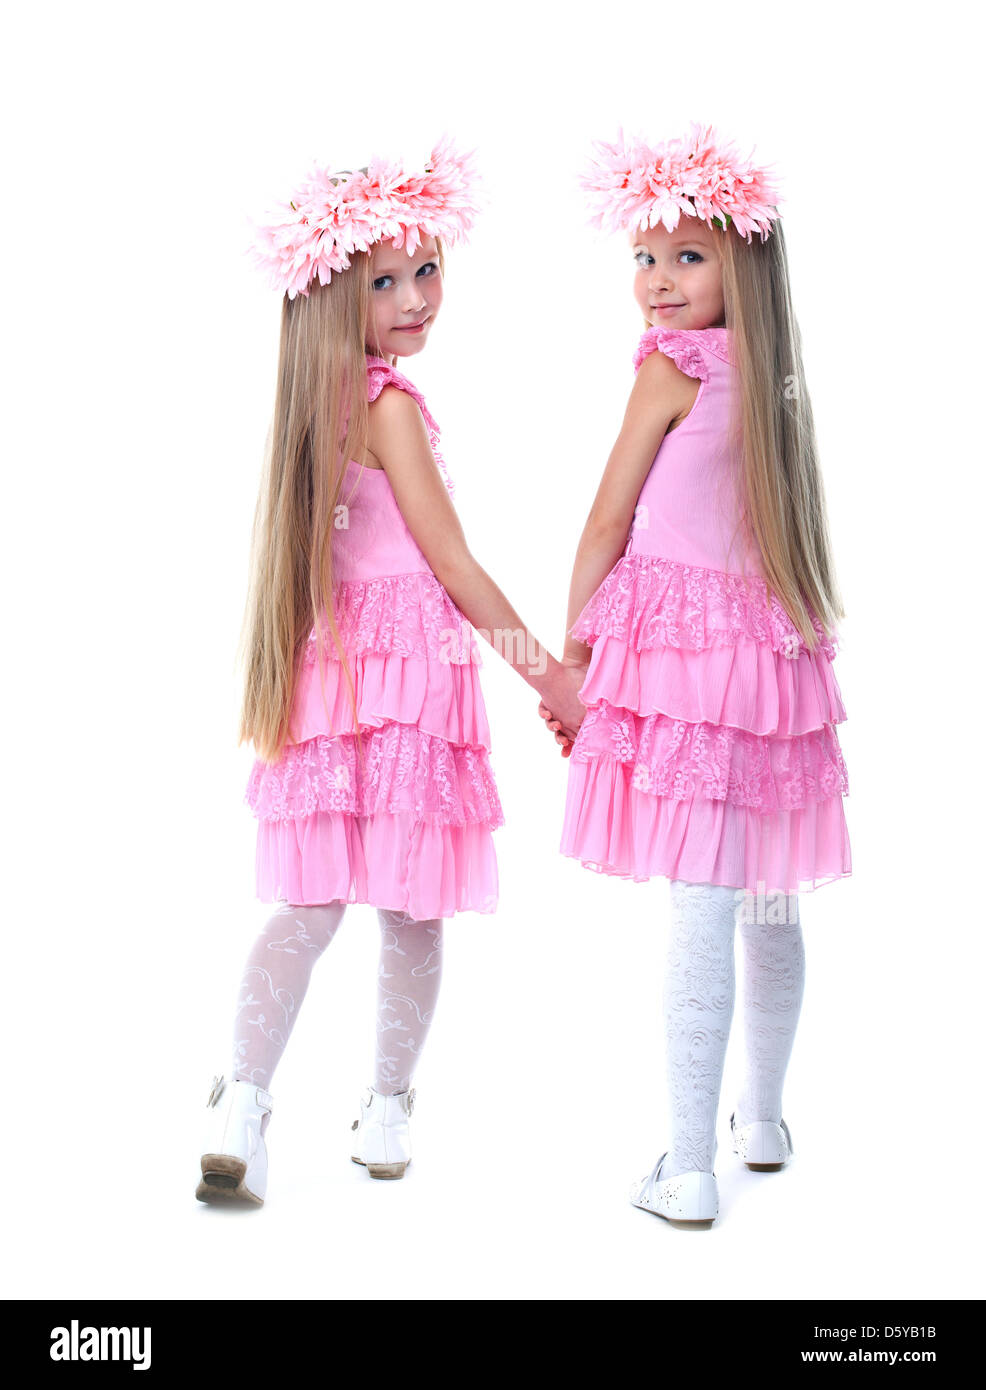 Les petites filles en robe rose Banque D'Images